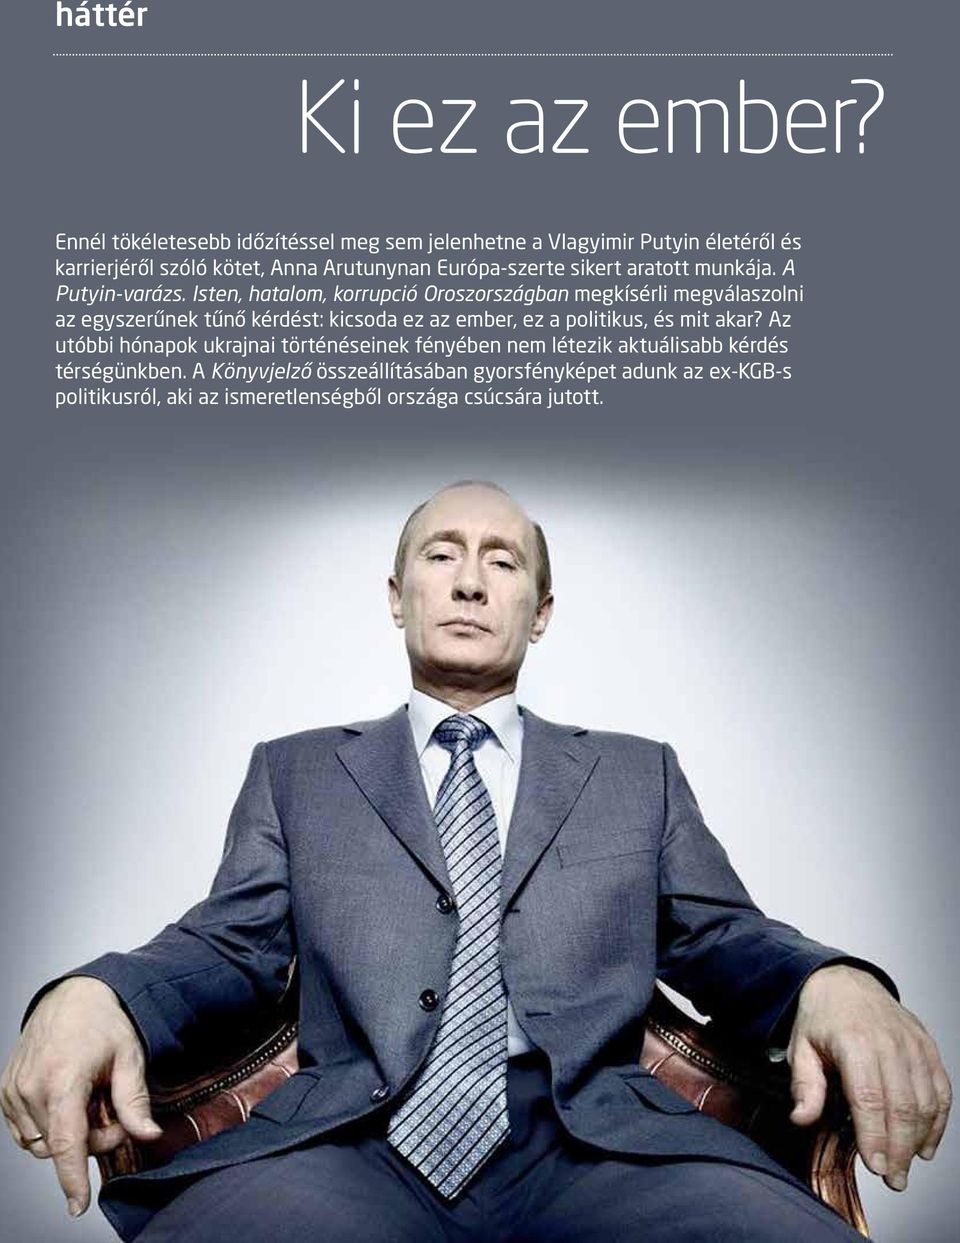 munkája. A Putyin-varázs.